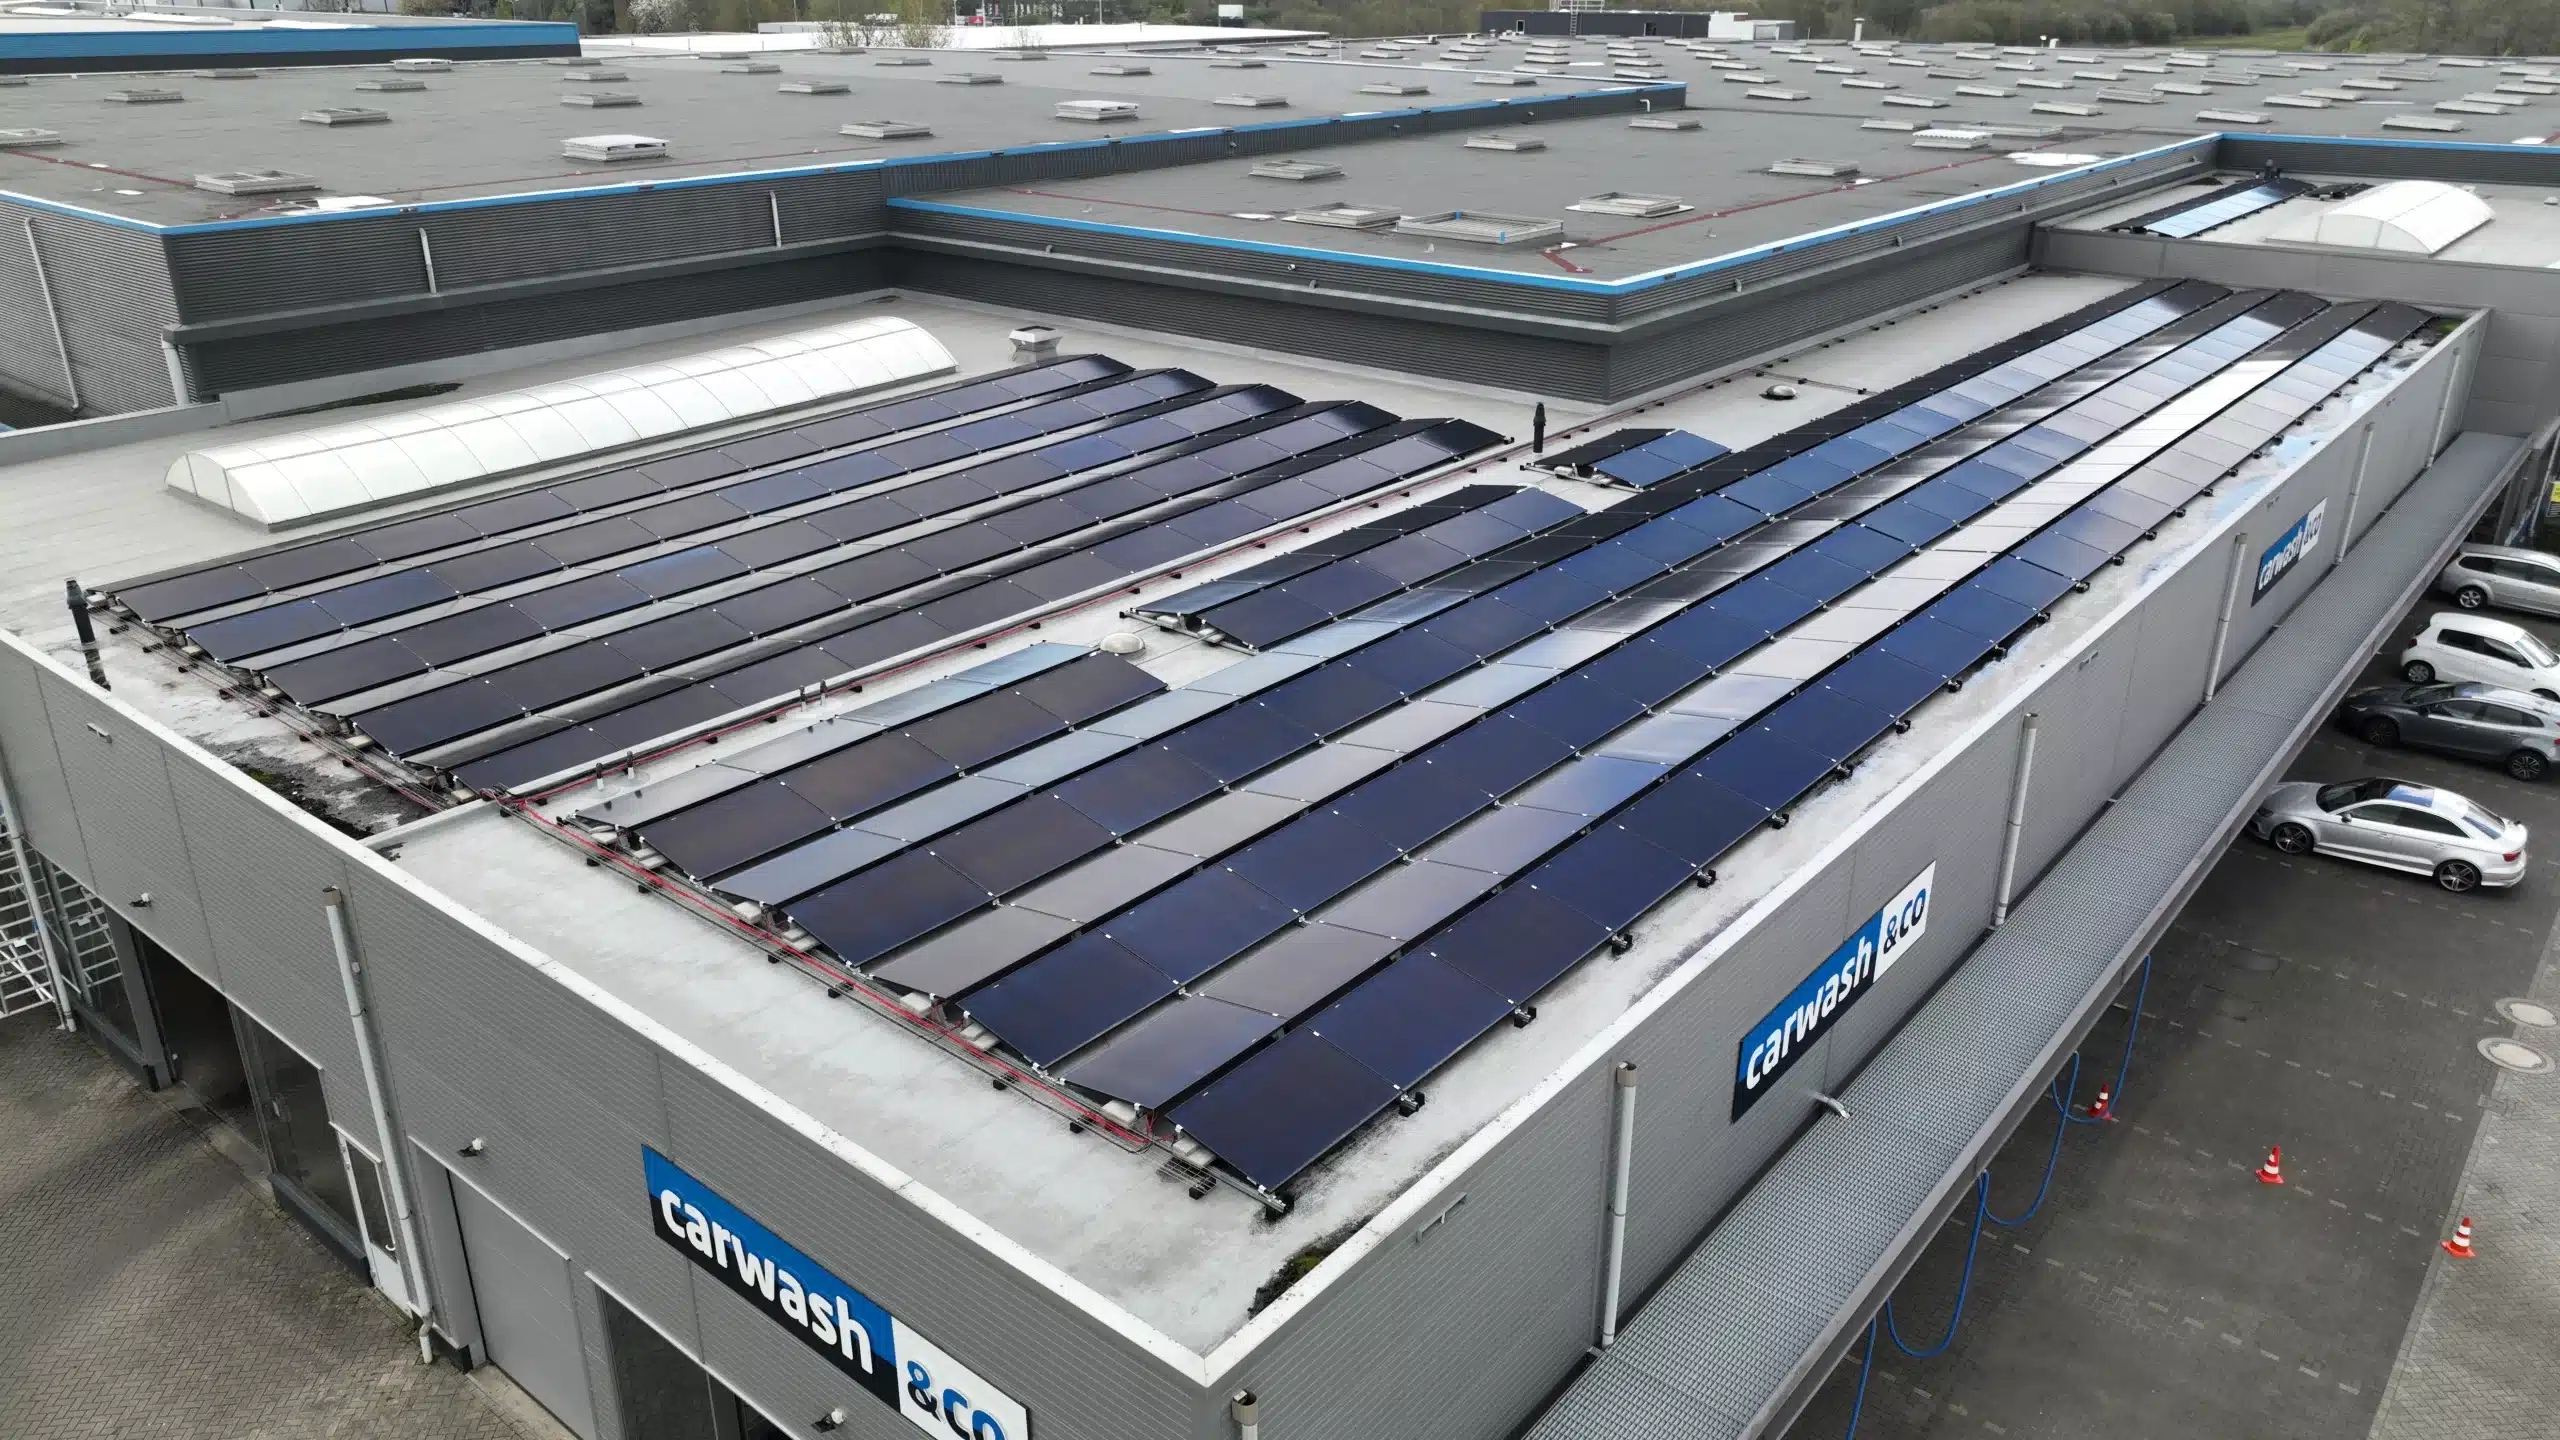 Luchtfoto van een zonnepanelen installatie met een groot aantal zonnepanelen op het dak, wat het gebruik van hernieuwbare energie door bedrijven toont. Zonnepanelen voor bedrijven.